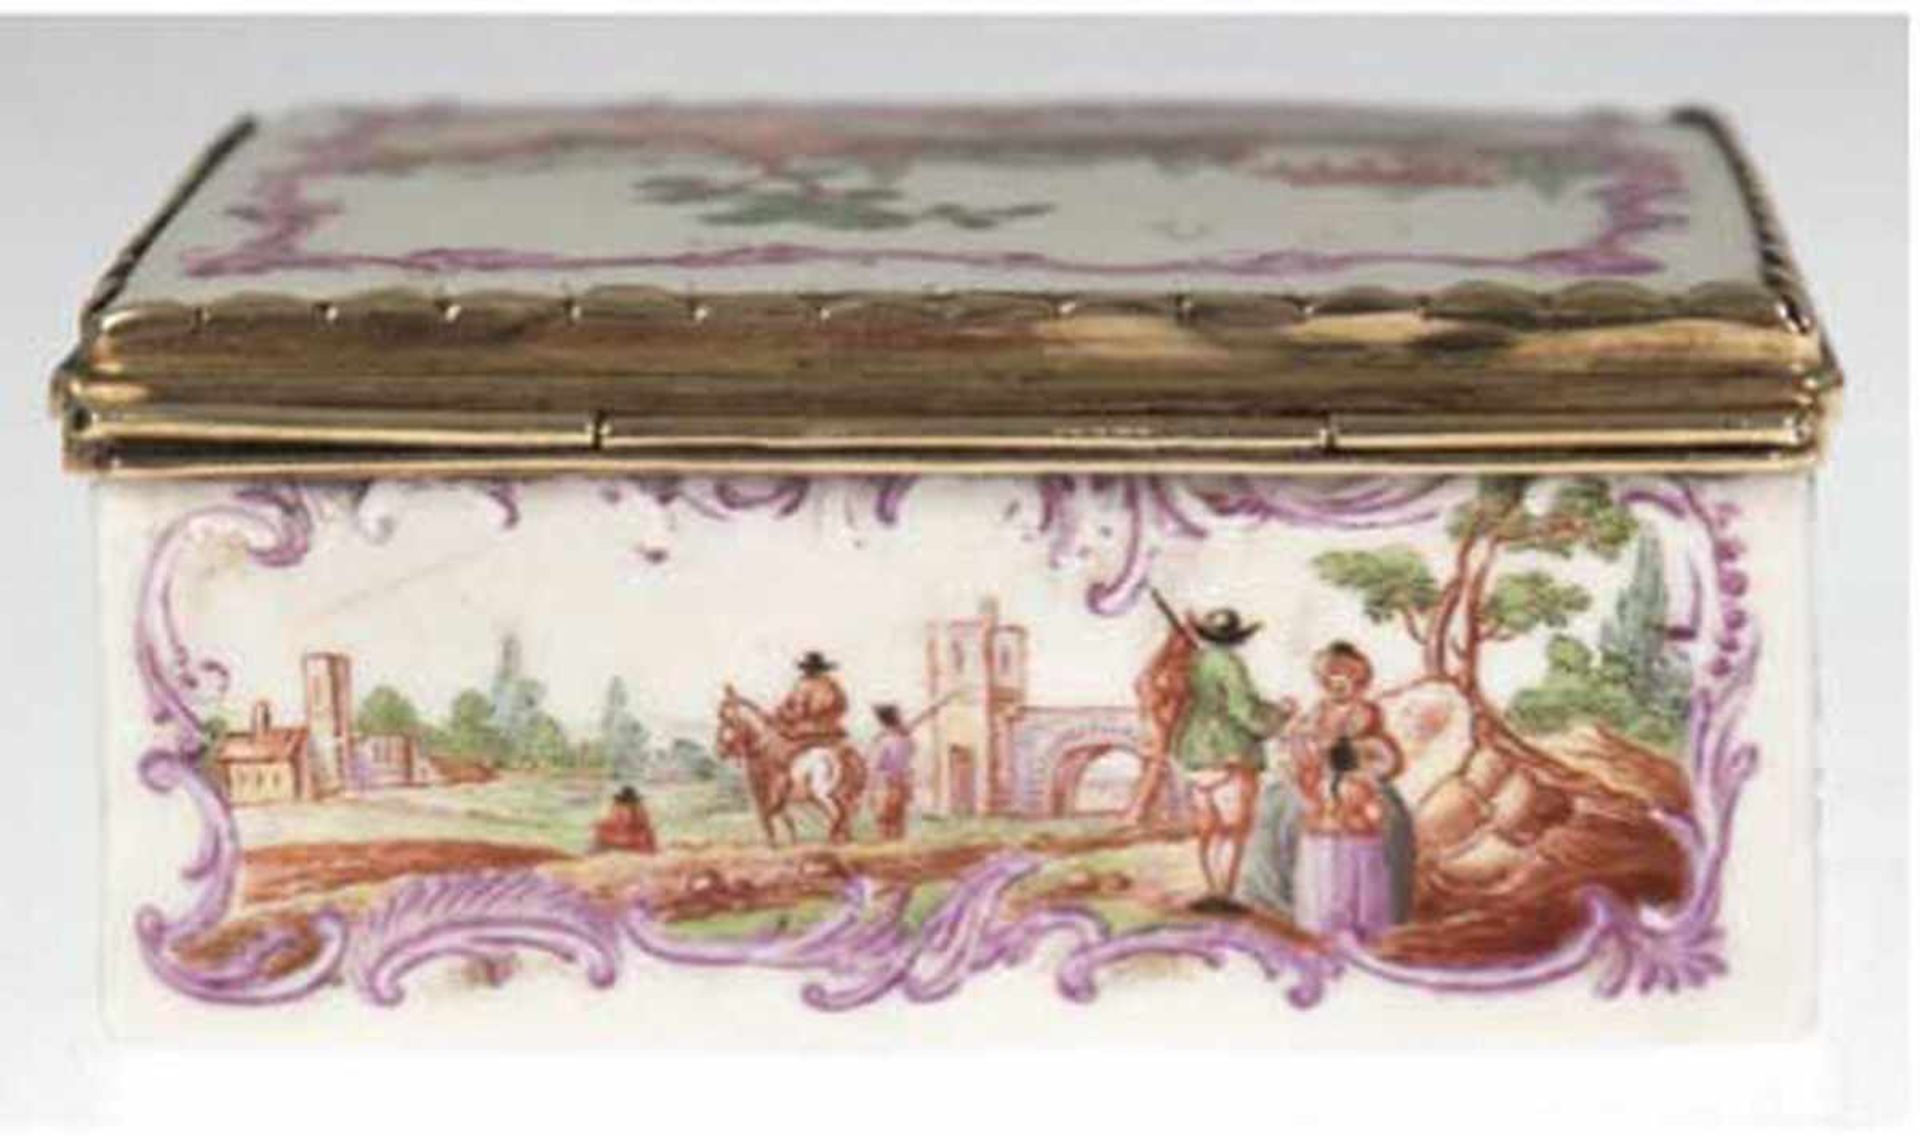 Deckeldose, 18. Jh., Porzellan, polychrome Malerei, umlaufende Landschaftsdarstellung mit - Image 2 of 5